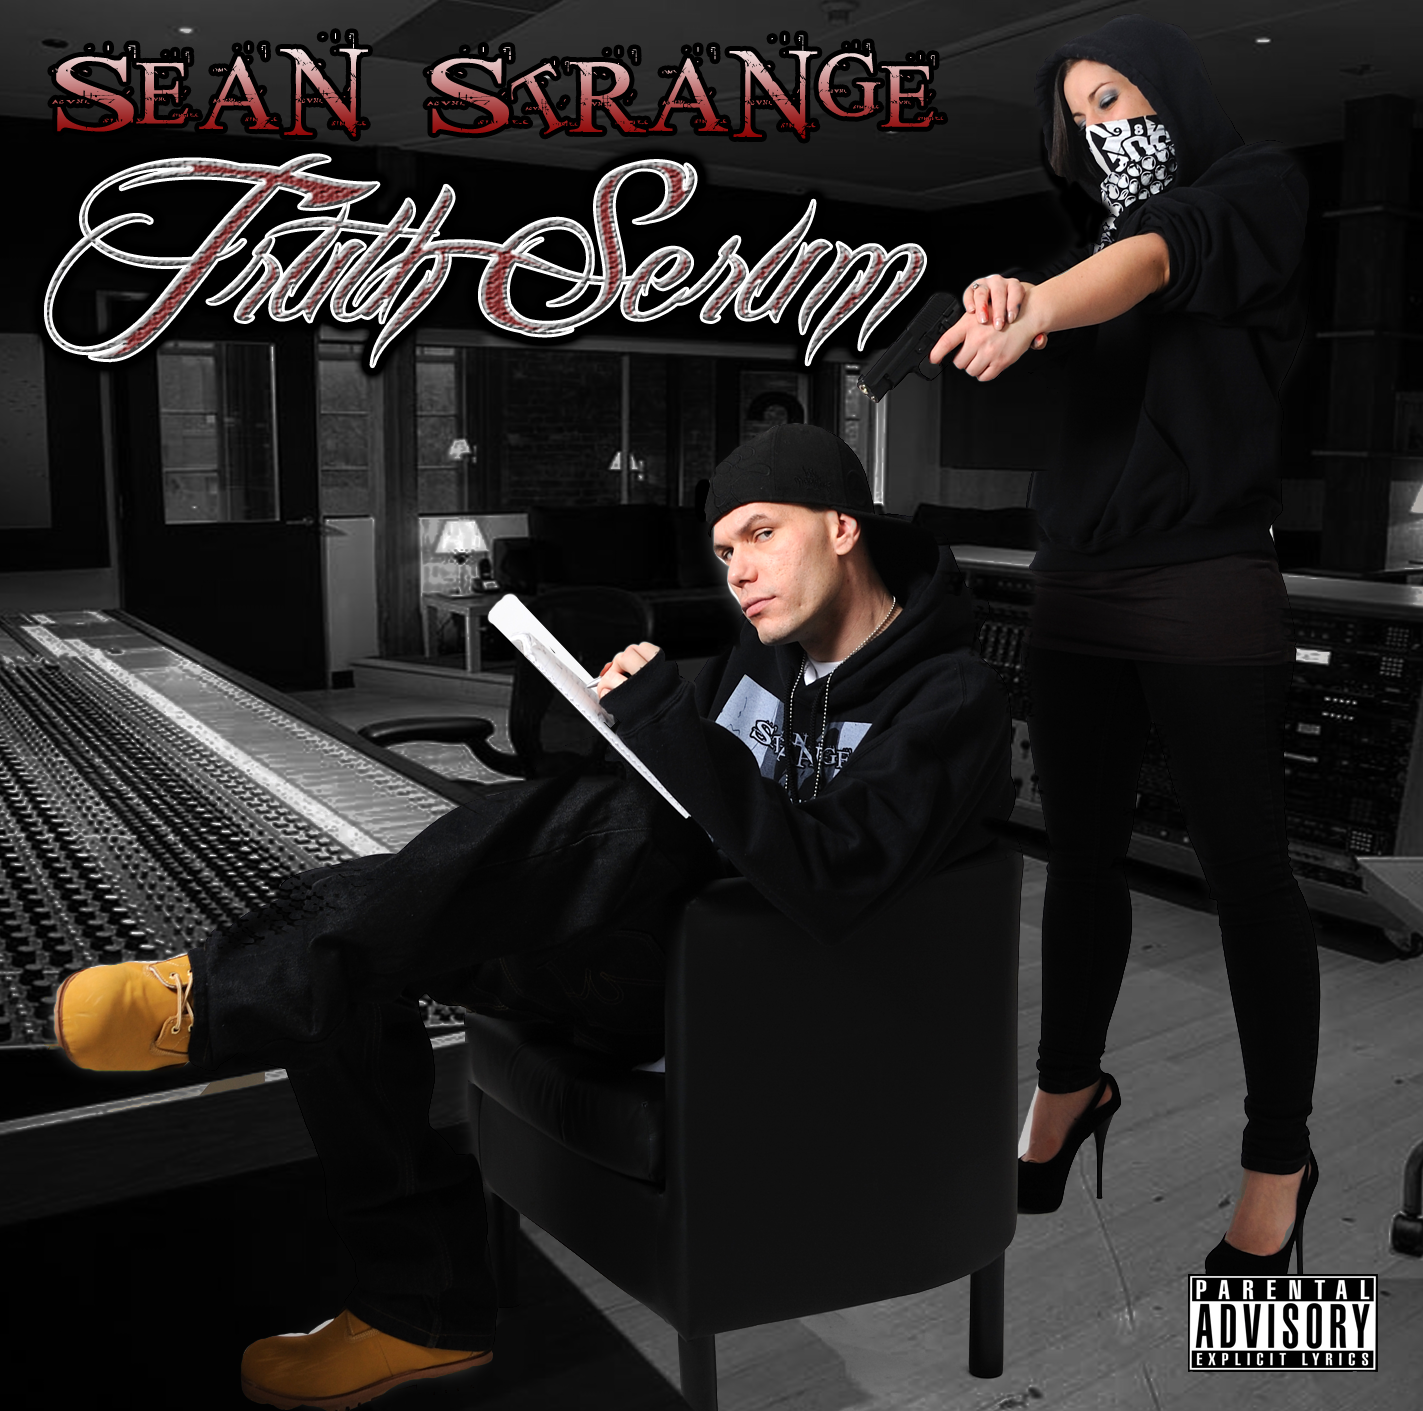 sean life is strange 2 download free